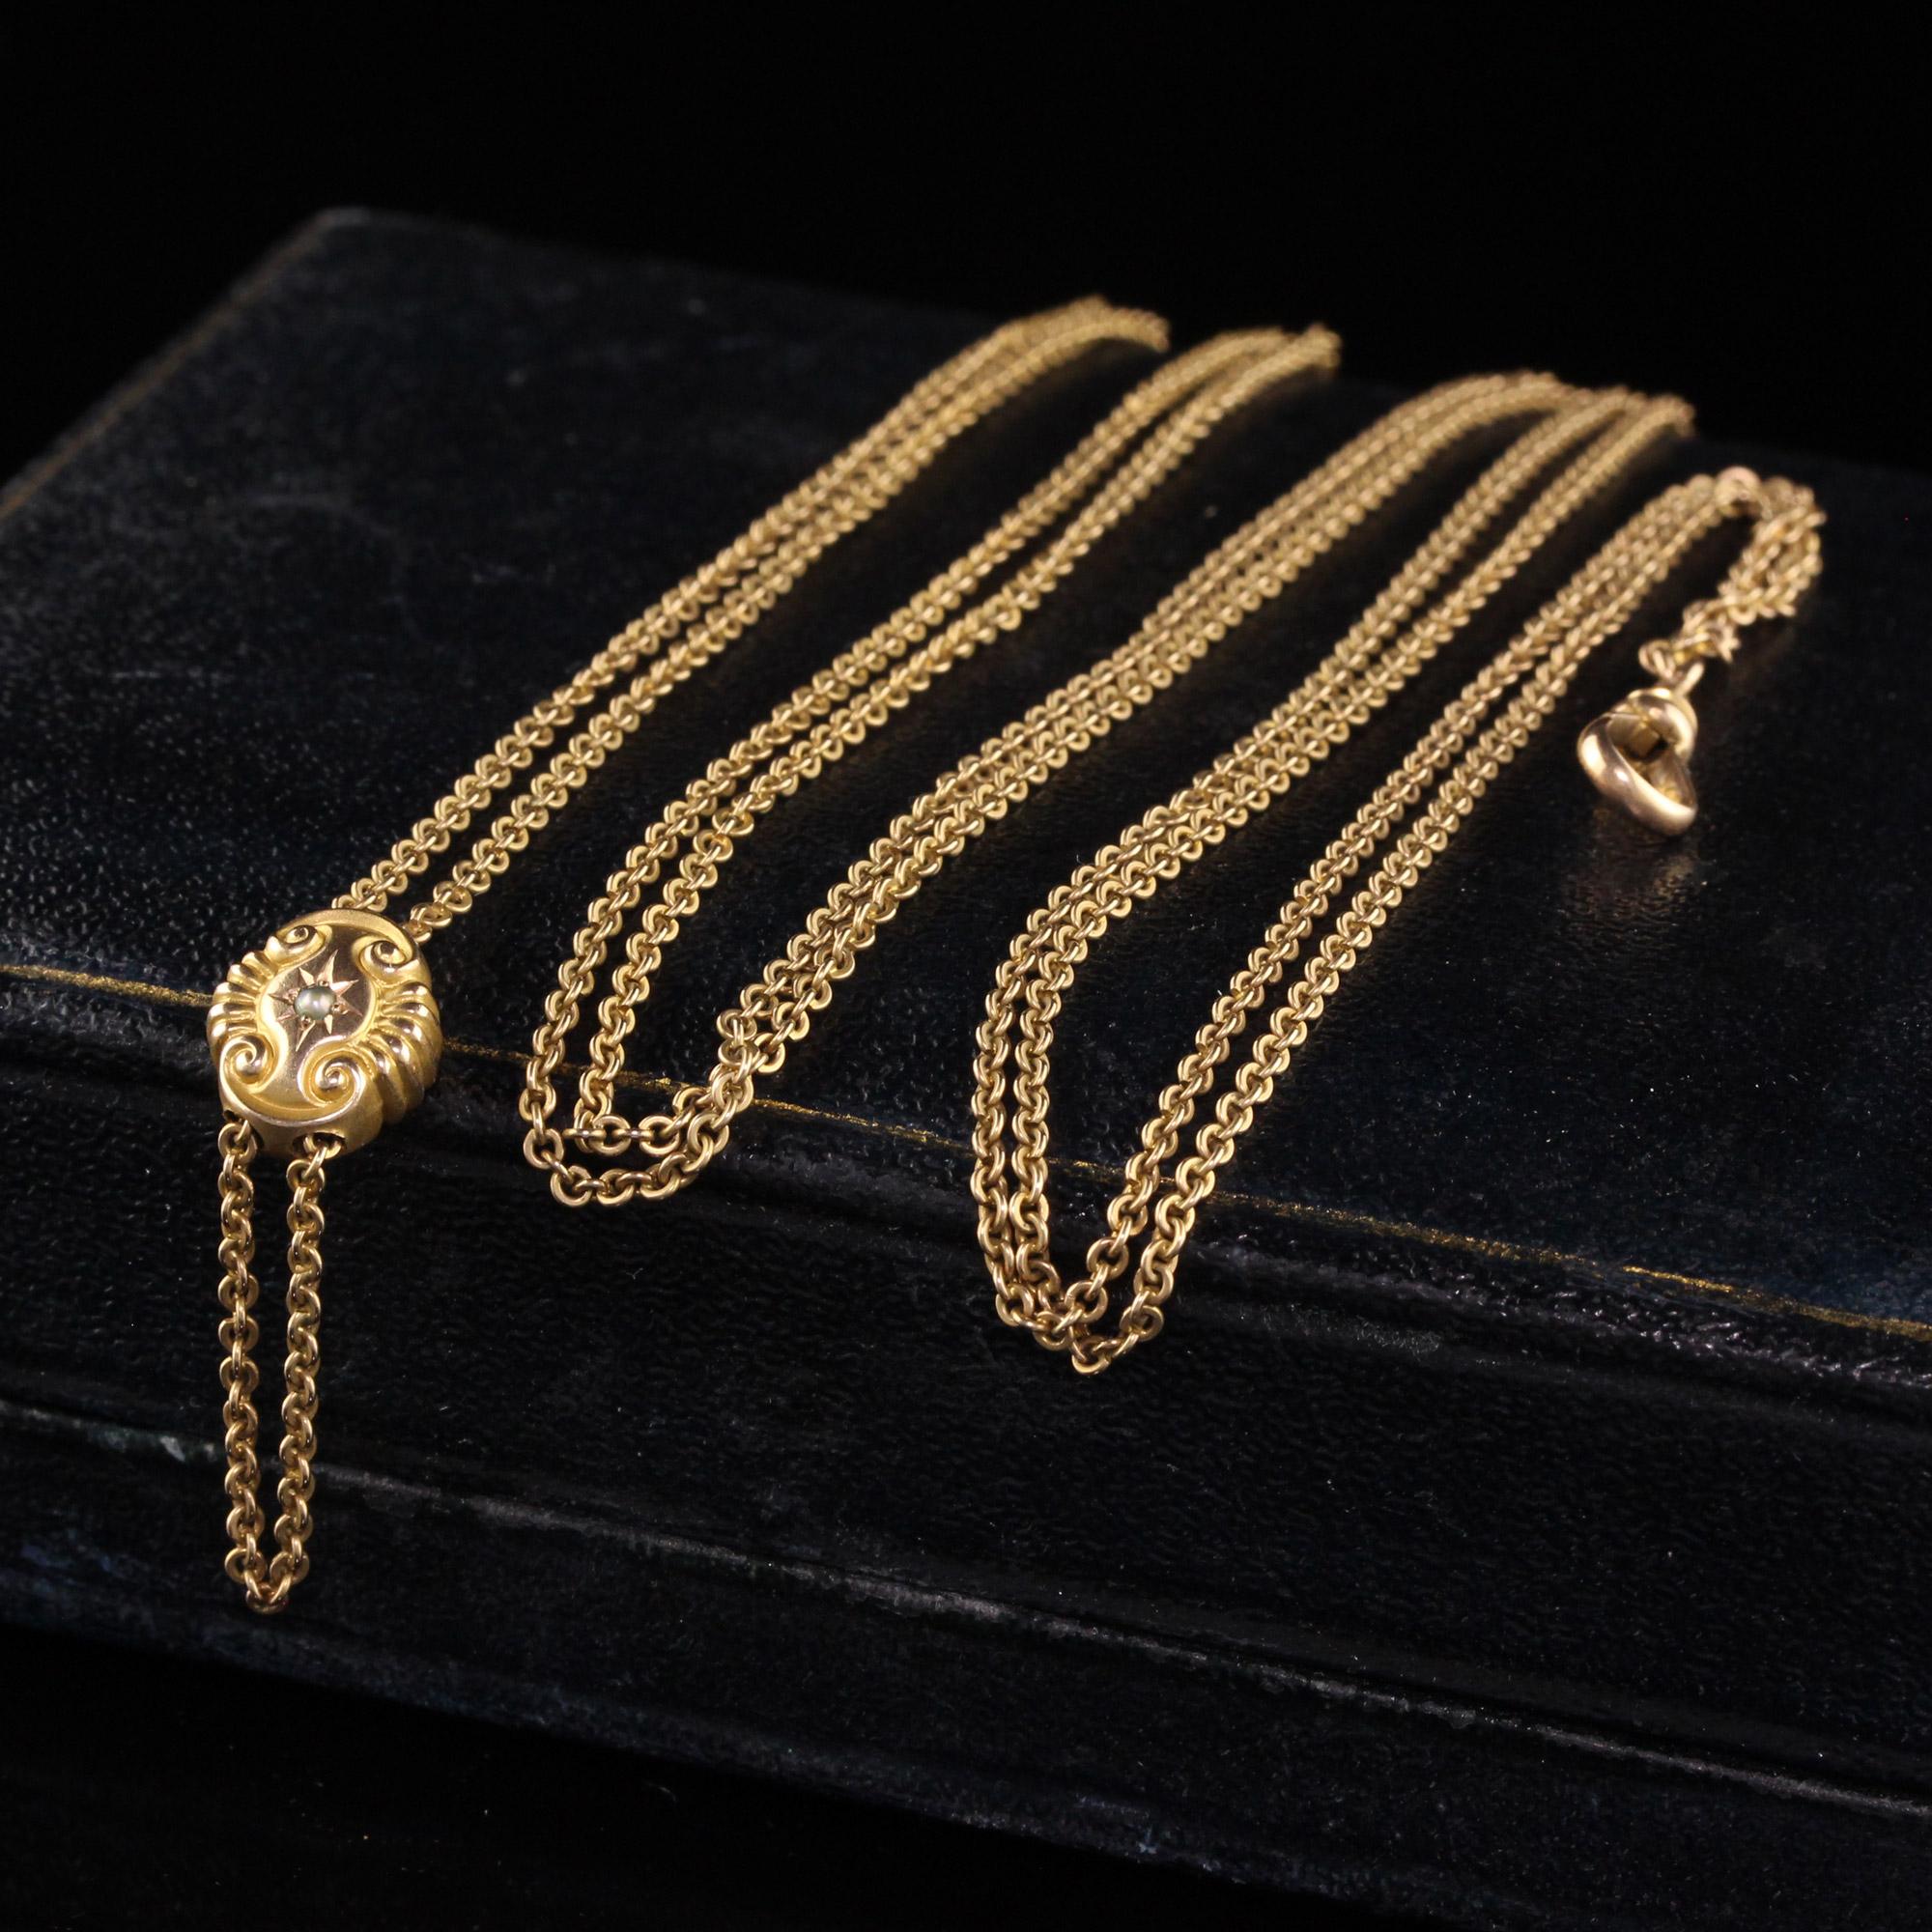 Schöne antike viktorianische 14K Gelbgold Kabel Link Kette Slider Halskette - 50 Zoll. Diese klassische Halskette ist aus 14k Gelbgold gefertigt. Die Kette besteht aus einem Kabelglied und hat einen schönen Schieber in der Mitte, der sich sehr